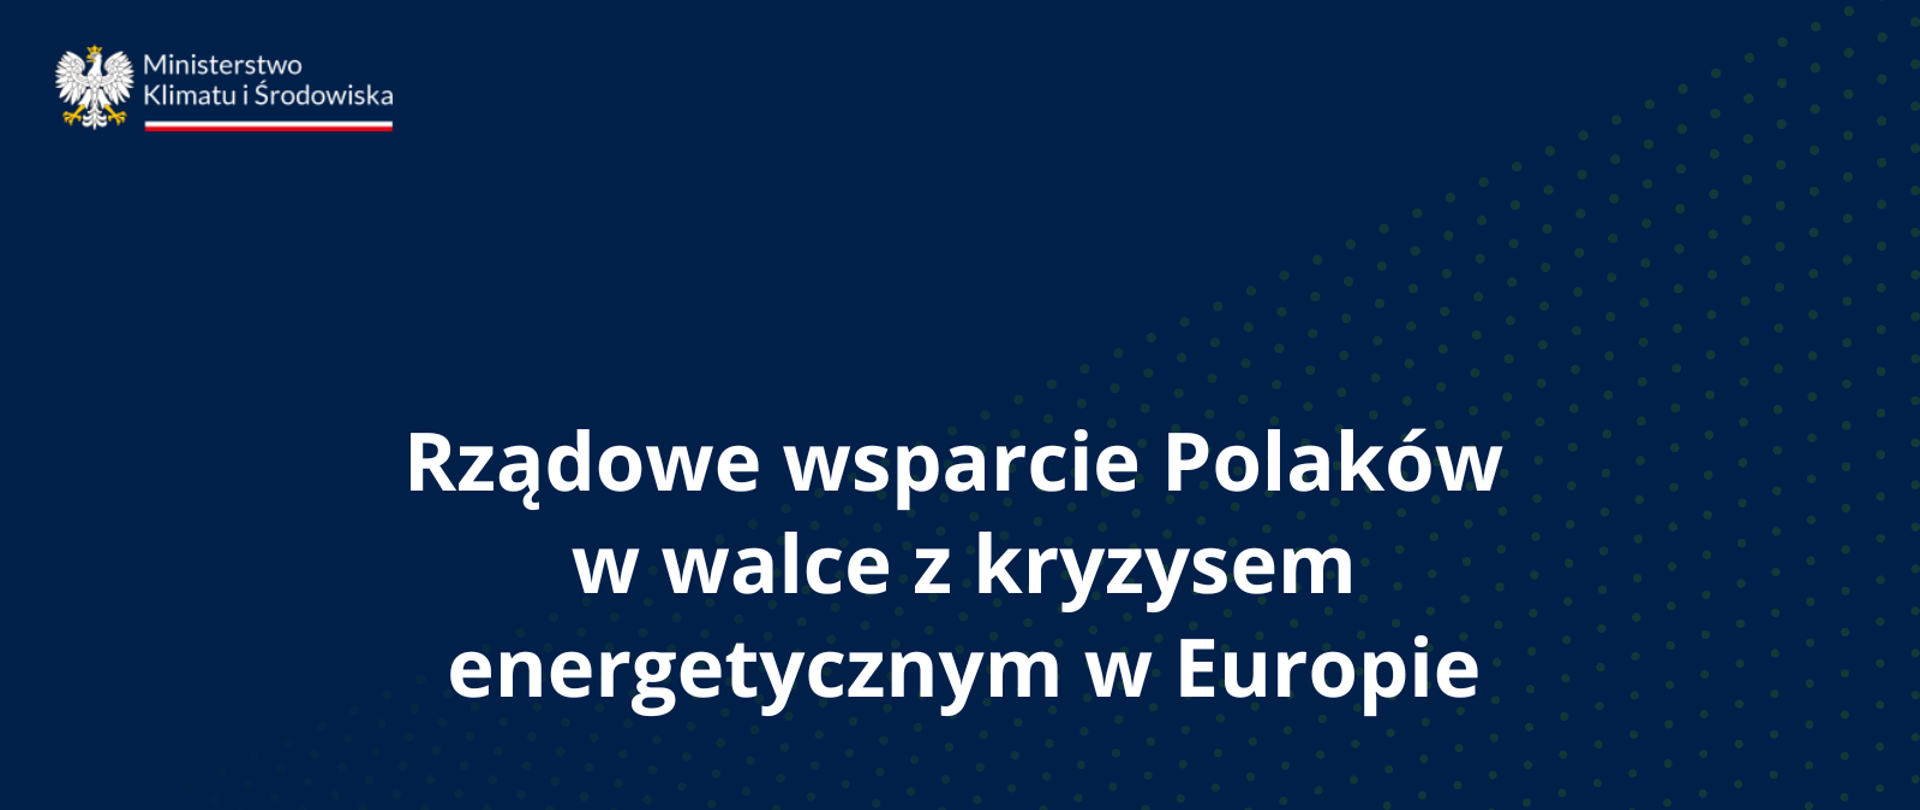 Rządowe wsparcie Polaków w walce z kryzysem energetycznym w Europie